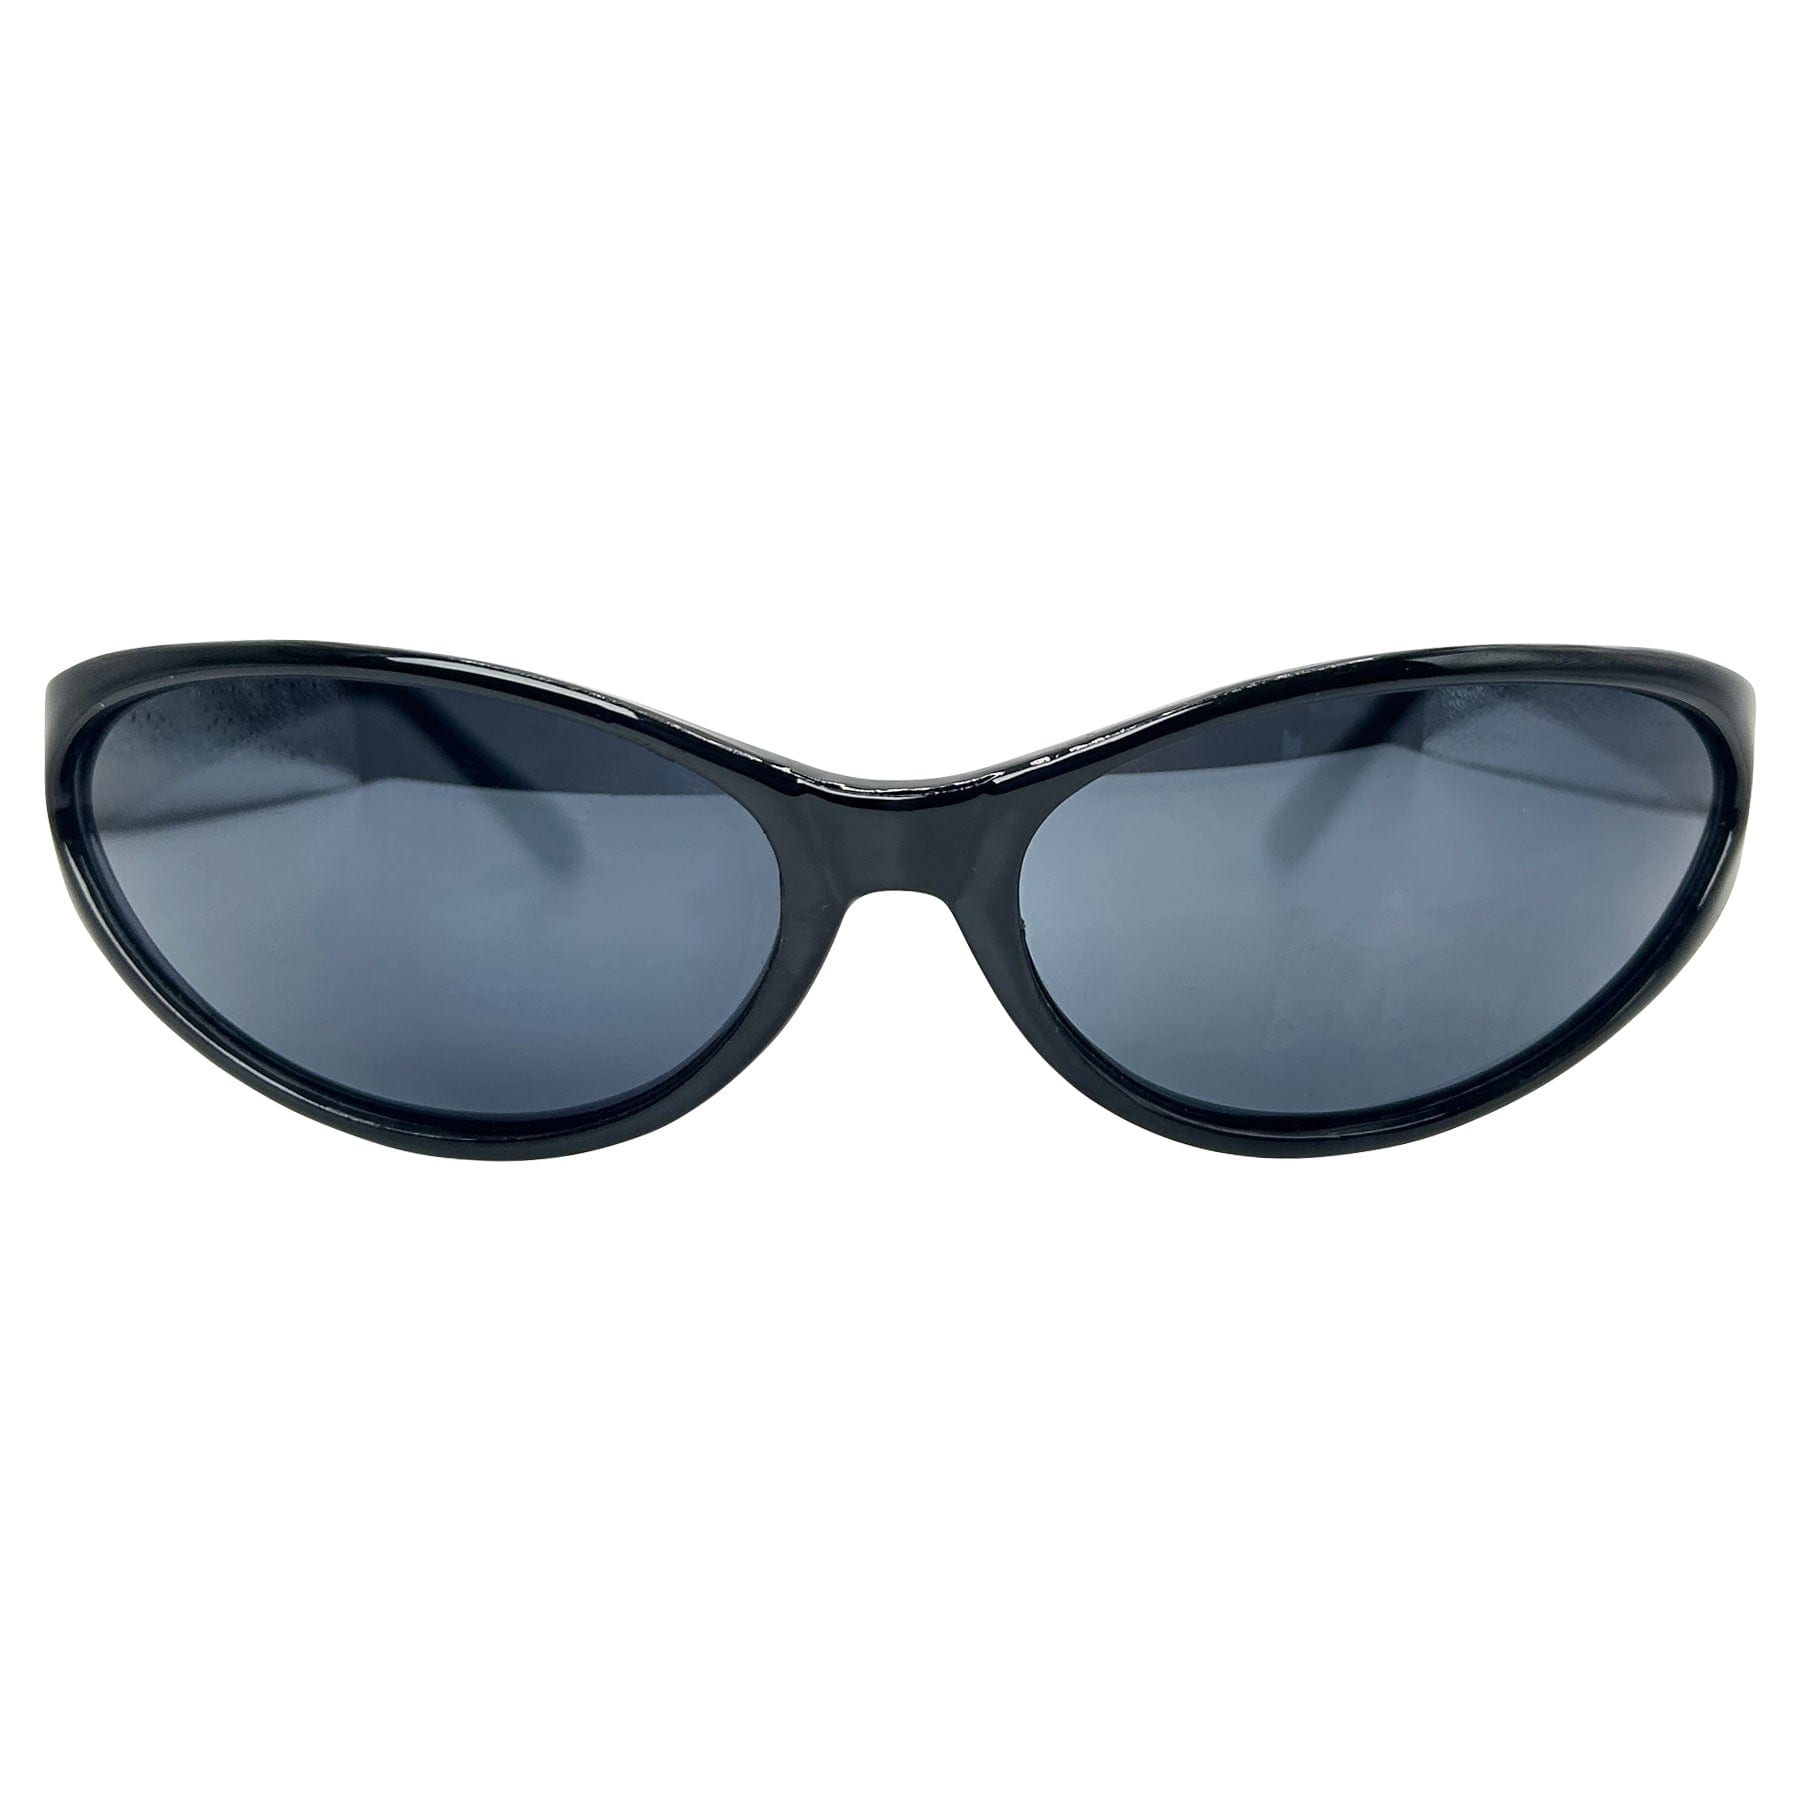 retros sunglasses with a sporty frame